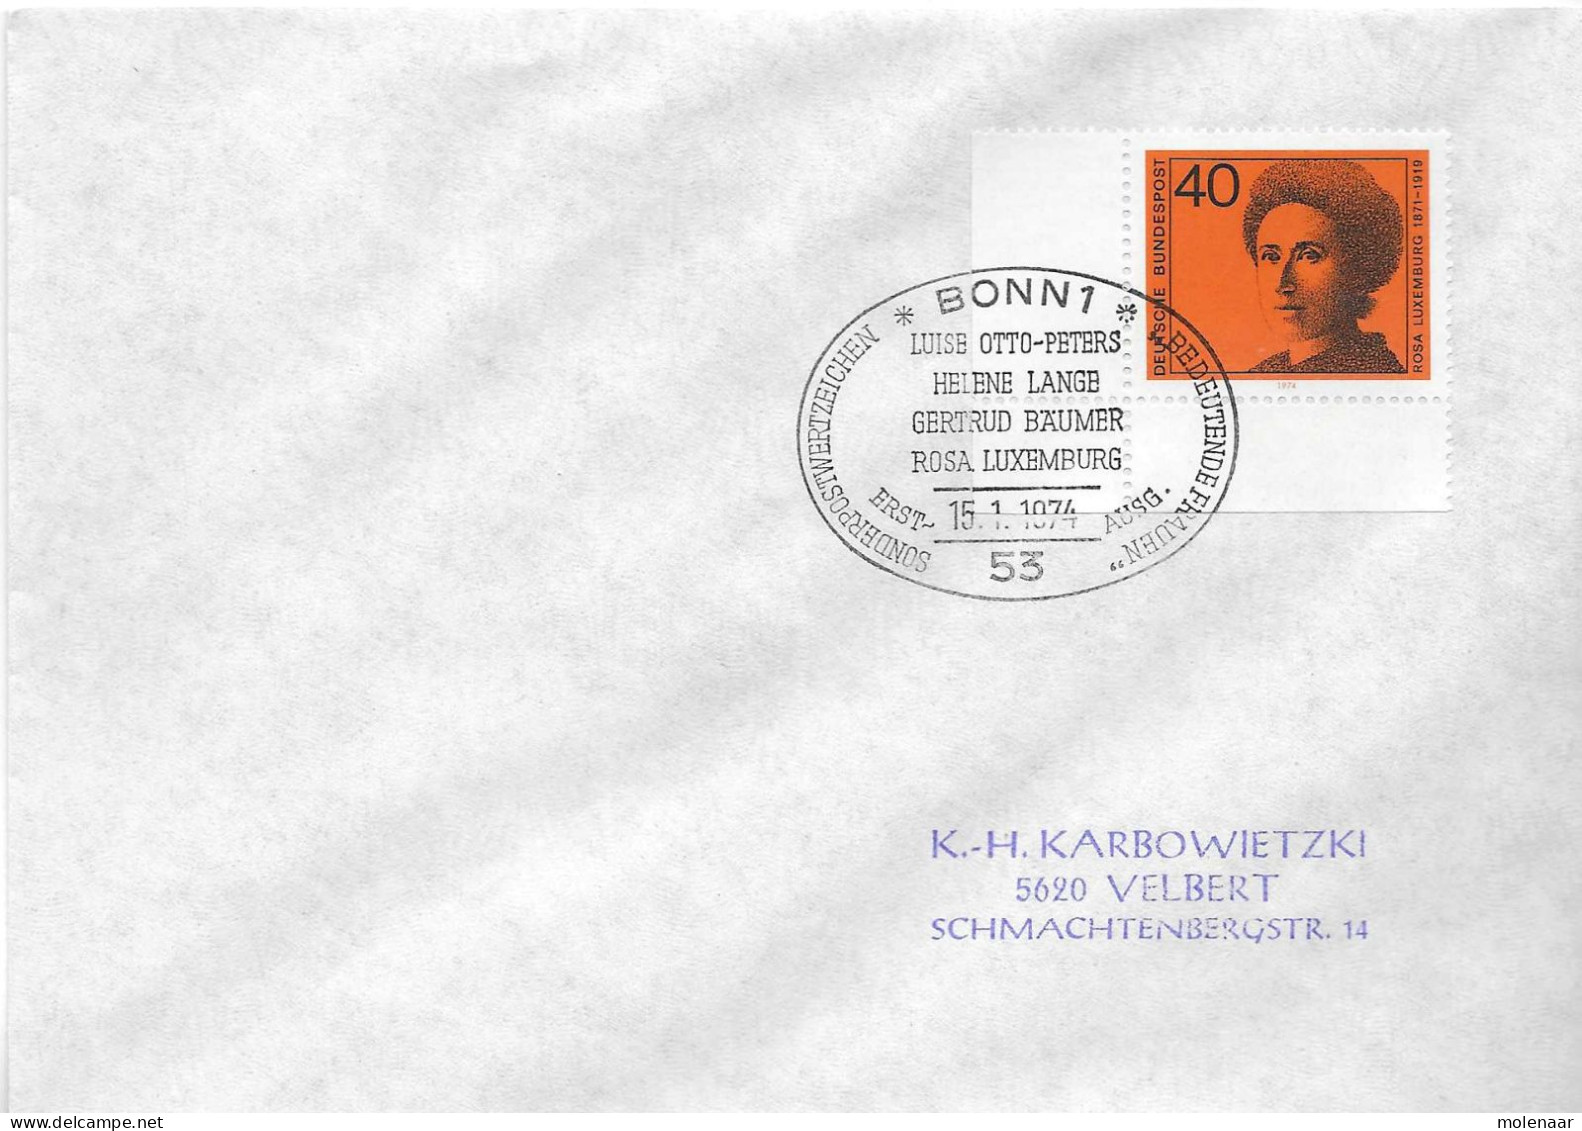 Postzegels > Europa > Duitsland > West-Duitsland > 1970-1979 > Brief Met No. 794 (17381) - Brieven En Documenten